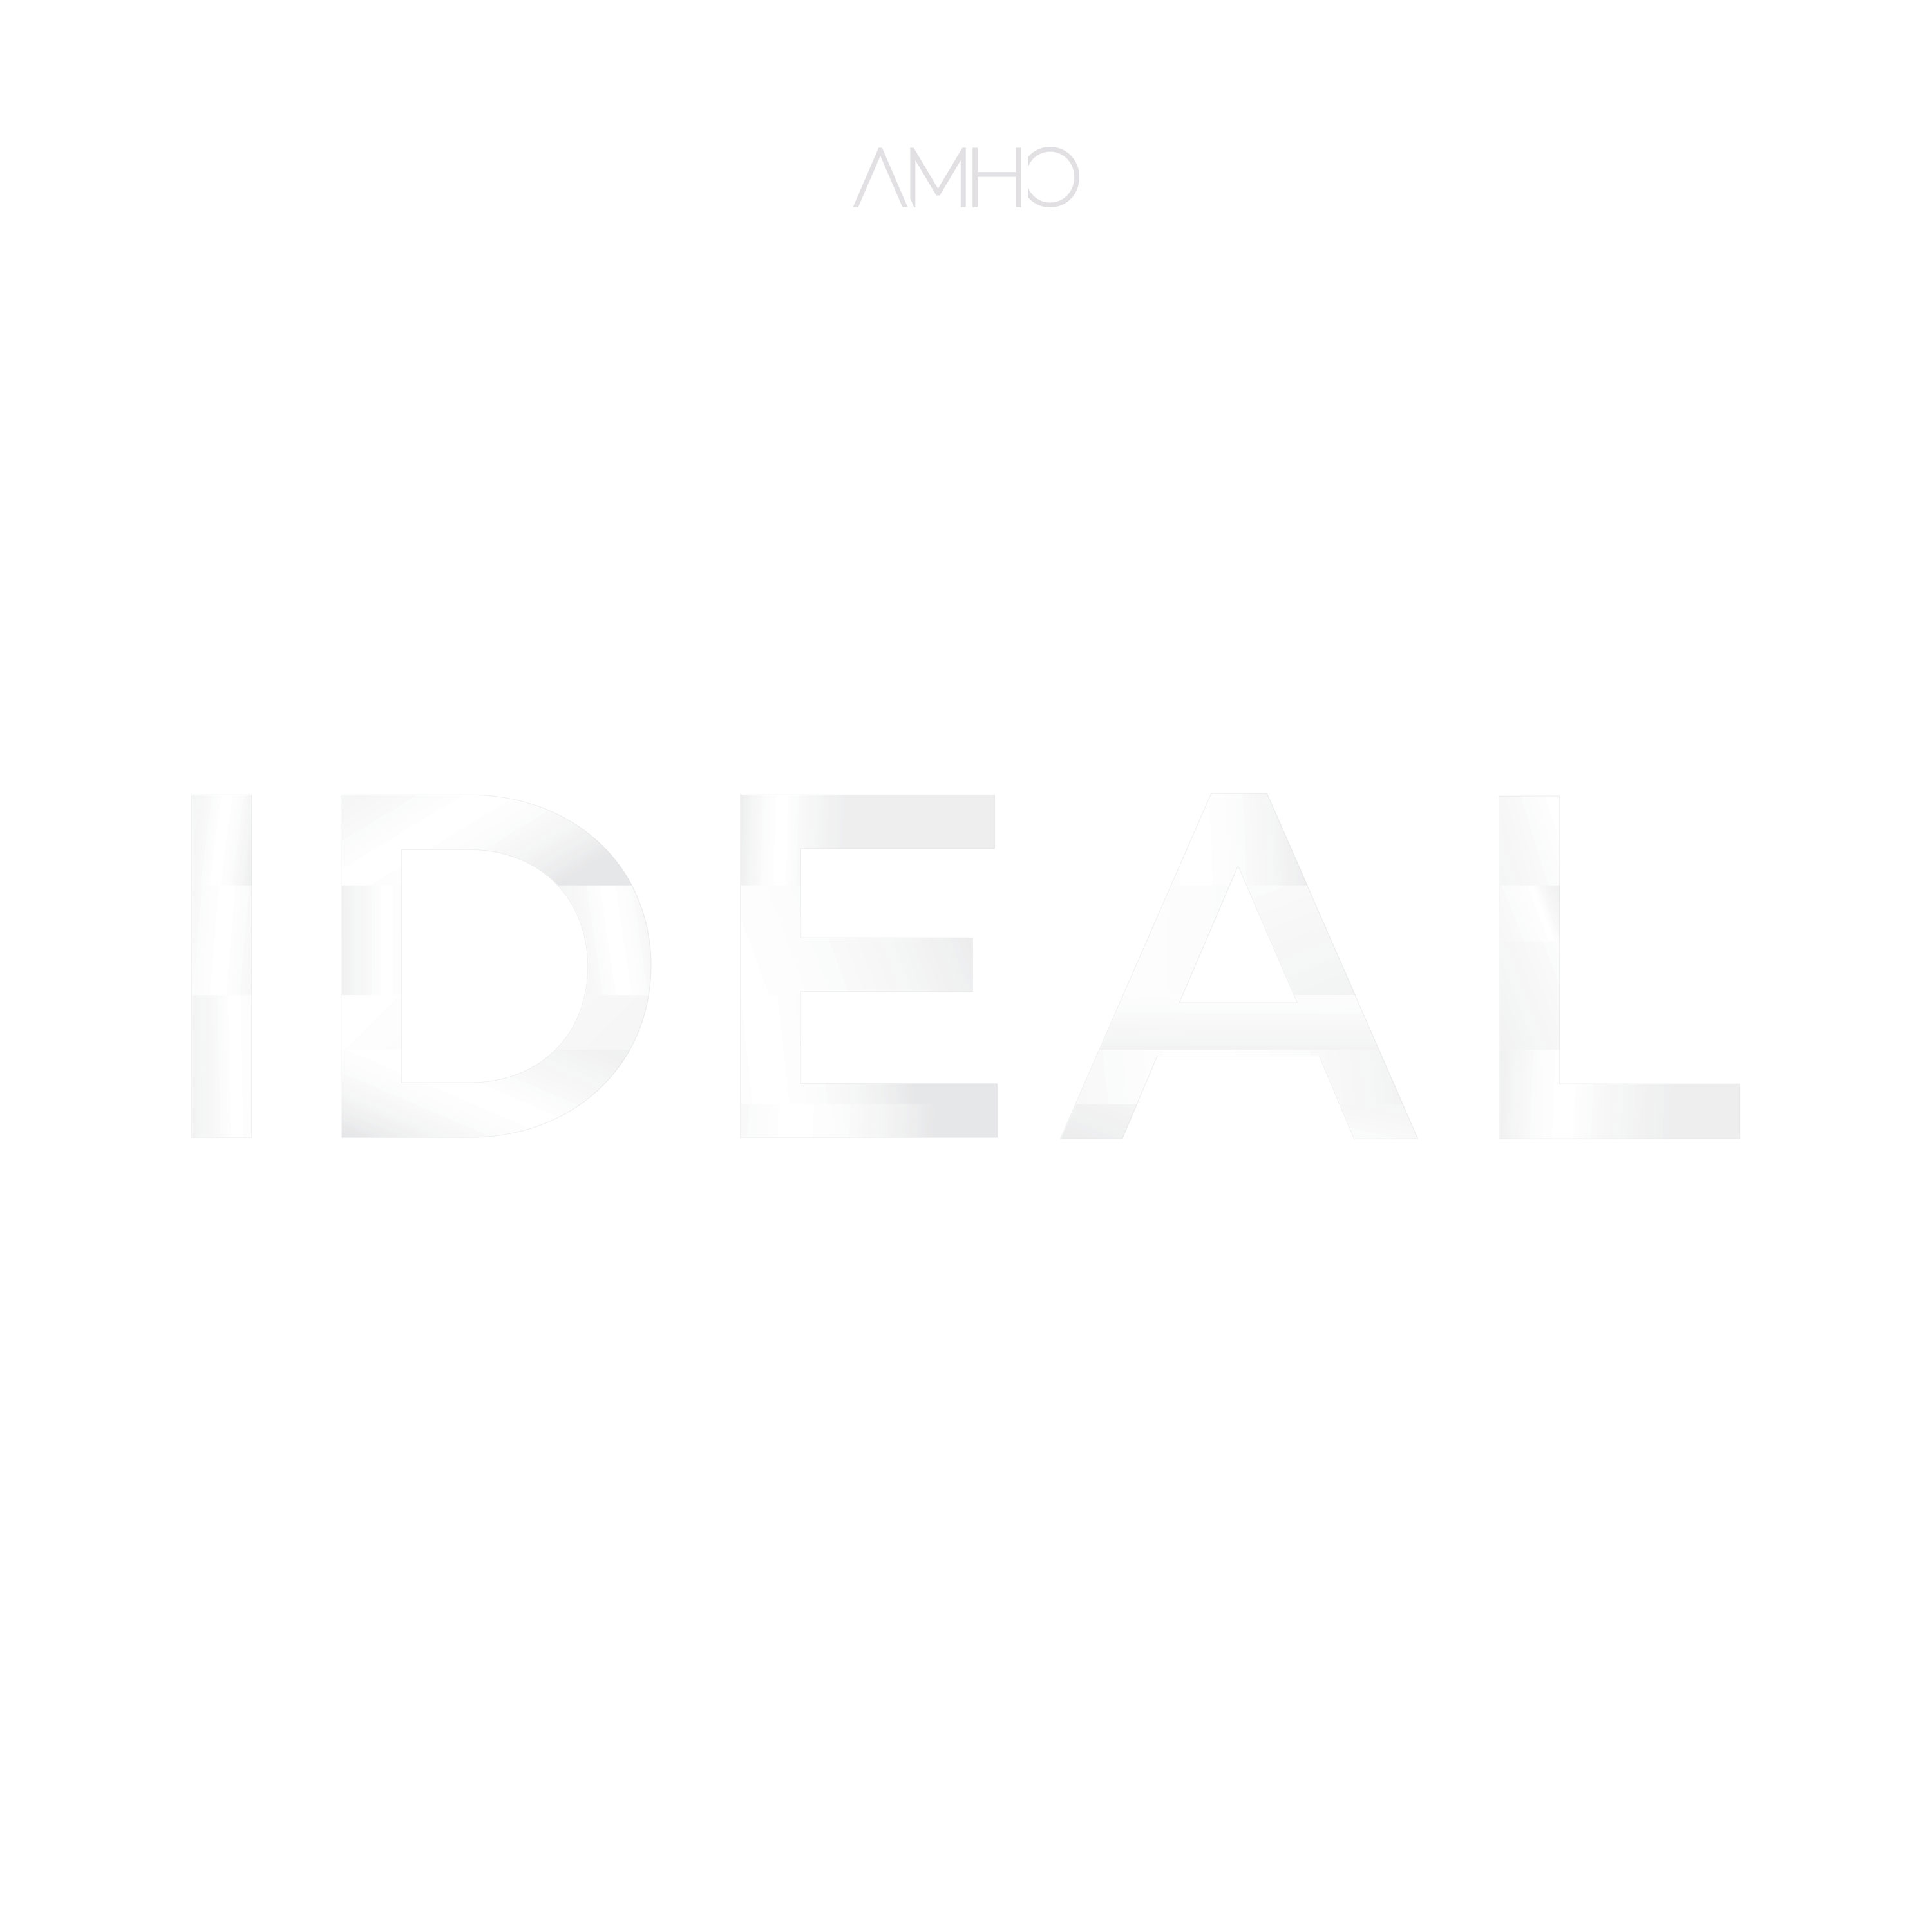 [全款 裸专] AMHO - EP Album [IDEAL] _黑裙子中国散粉